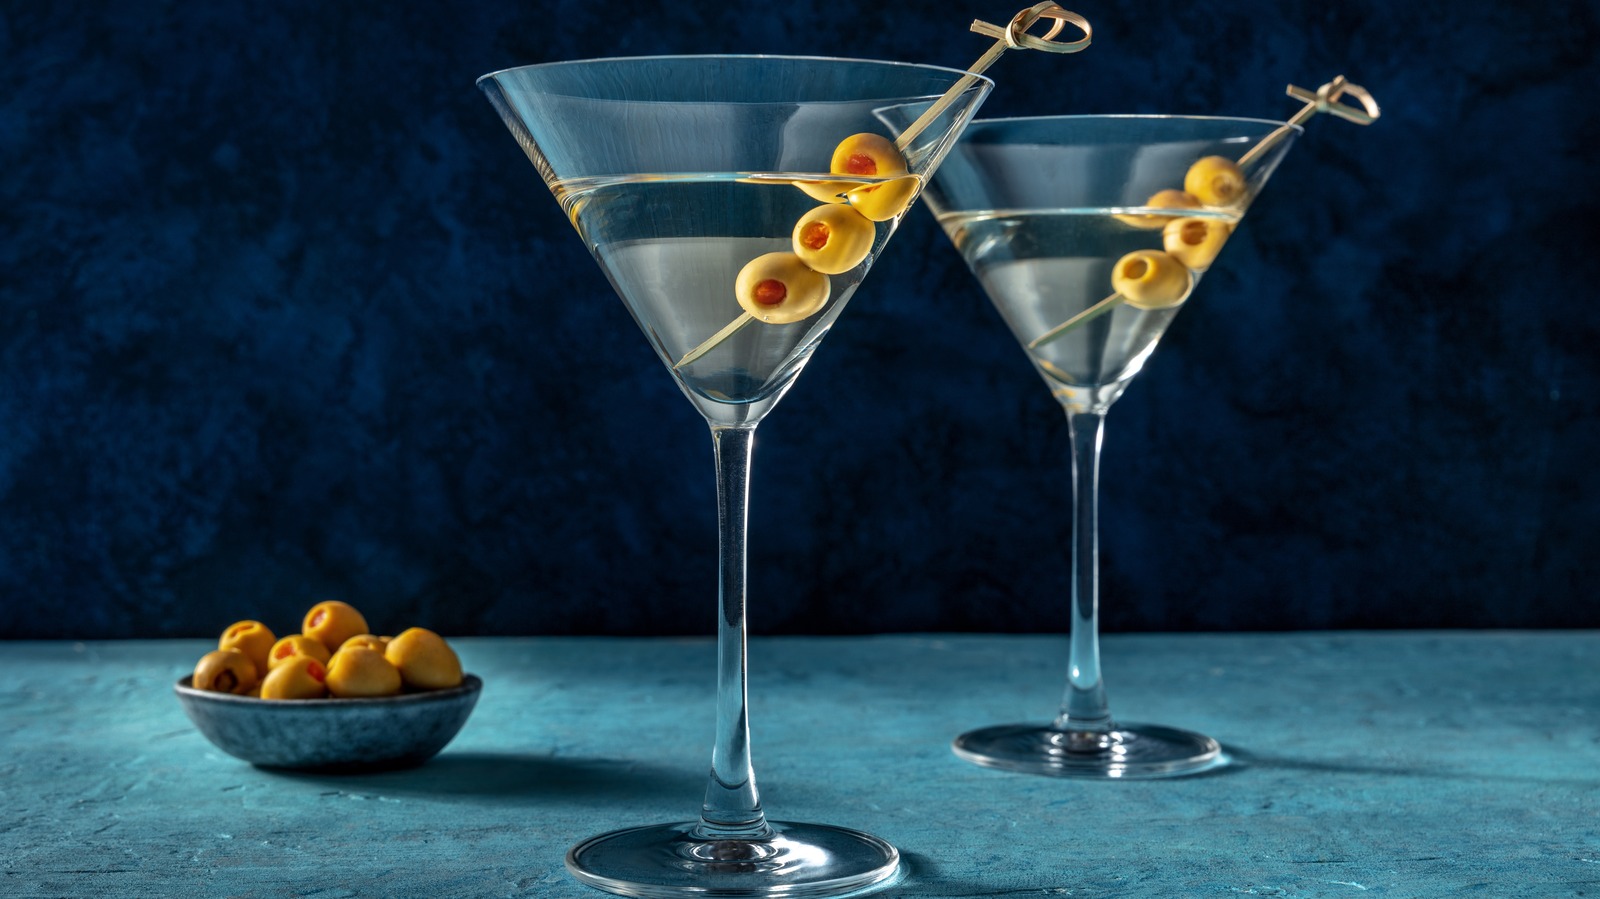 The Martini Glass